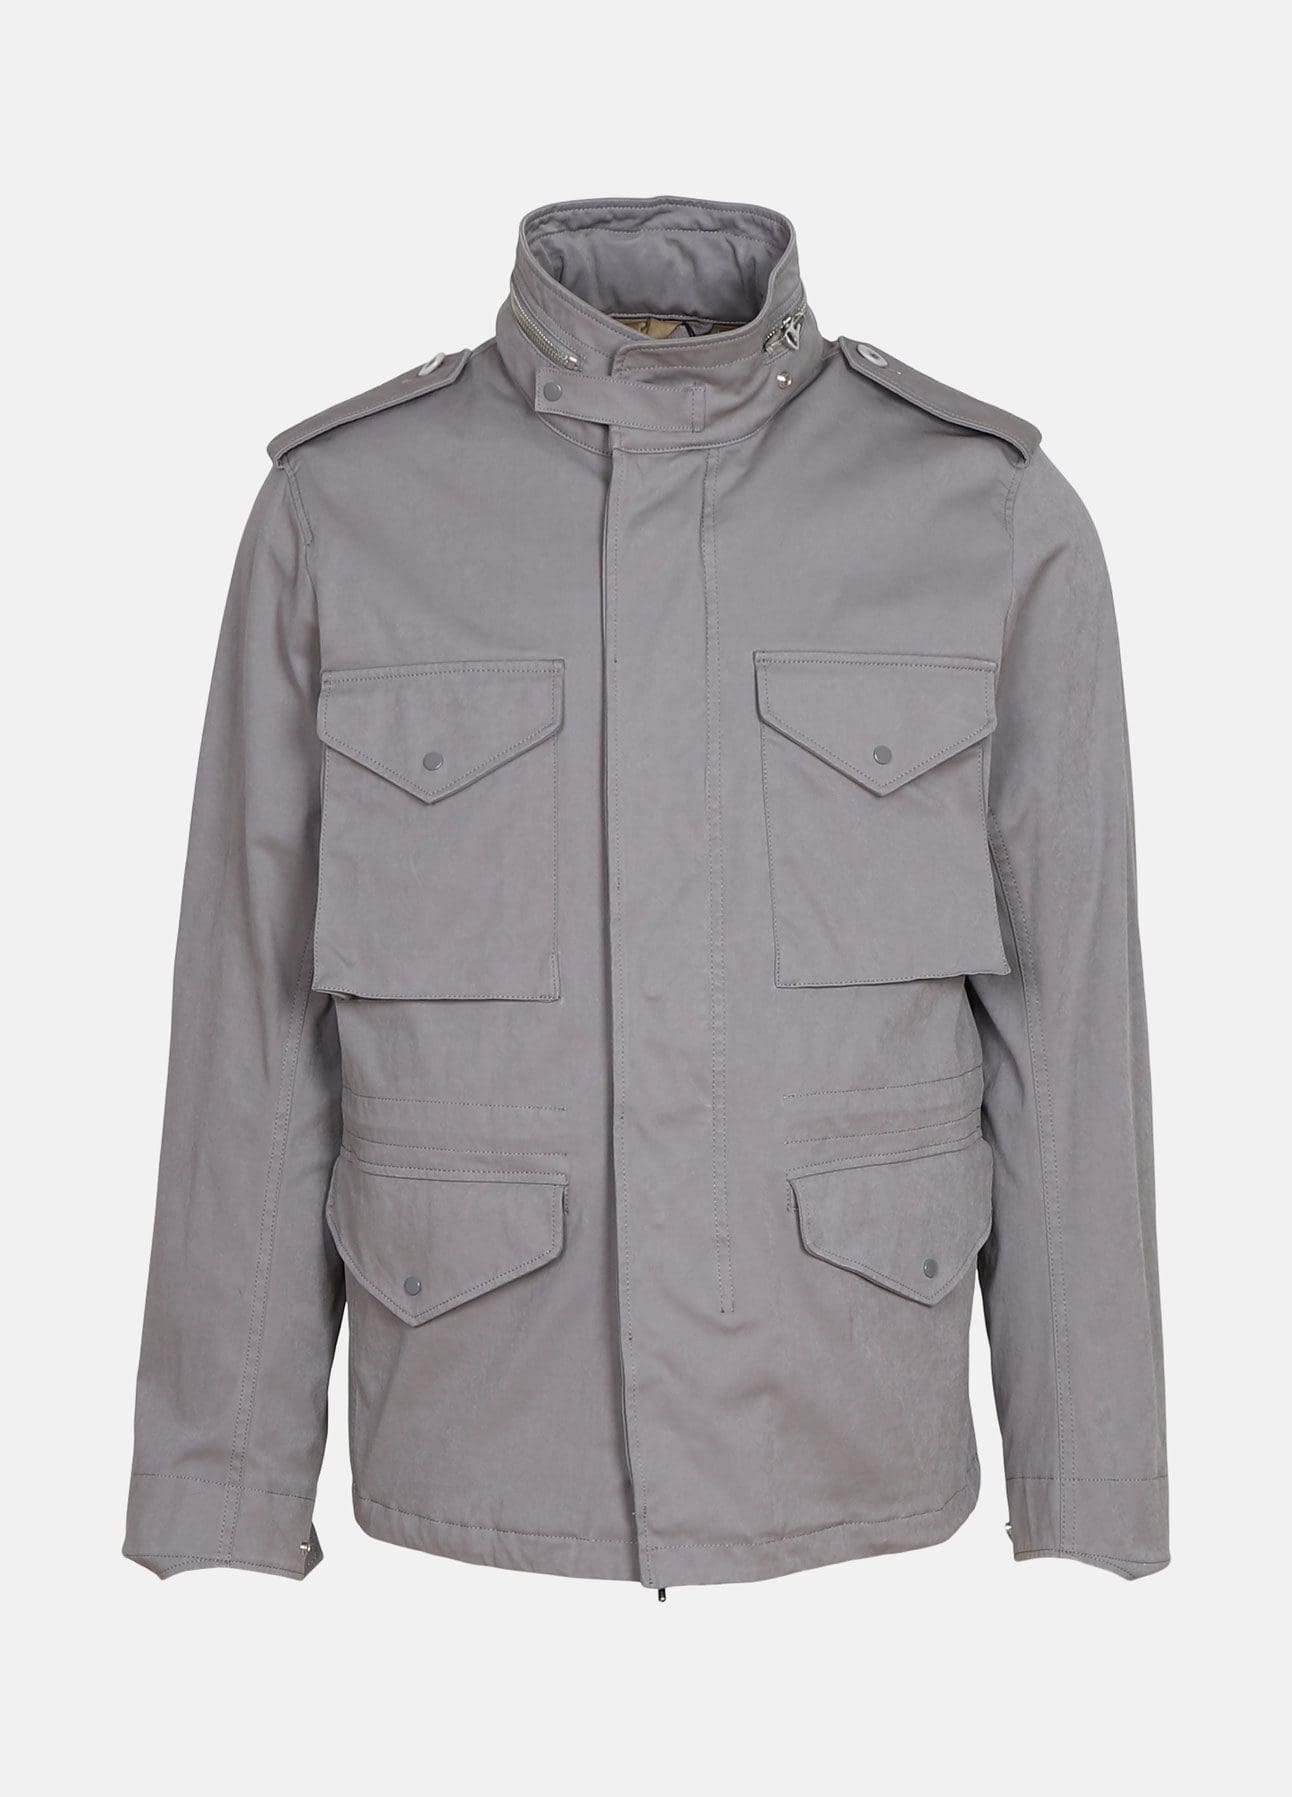 field jacket fra | Shop online hos troelstrup.com